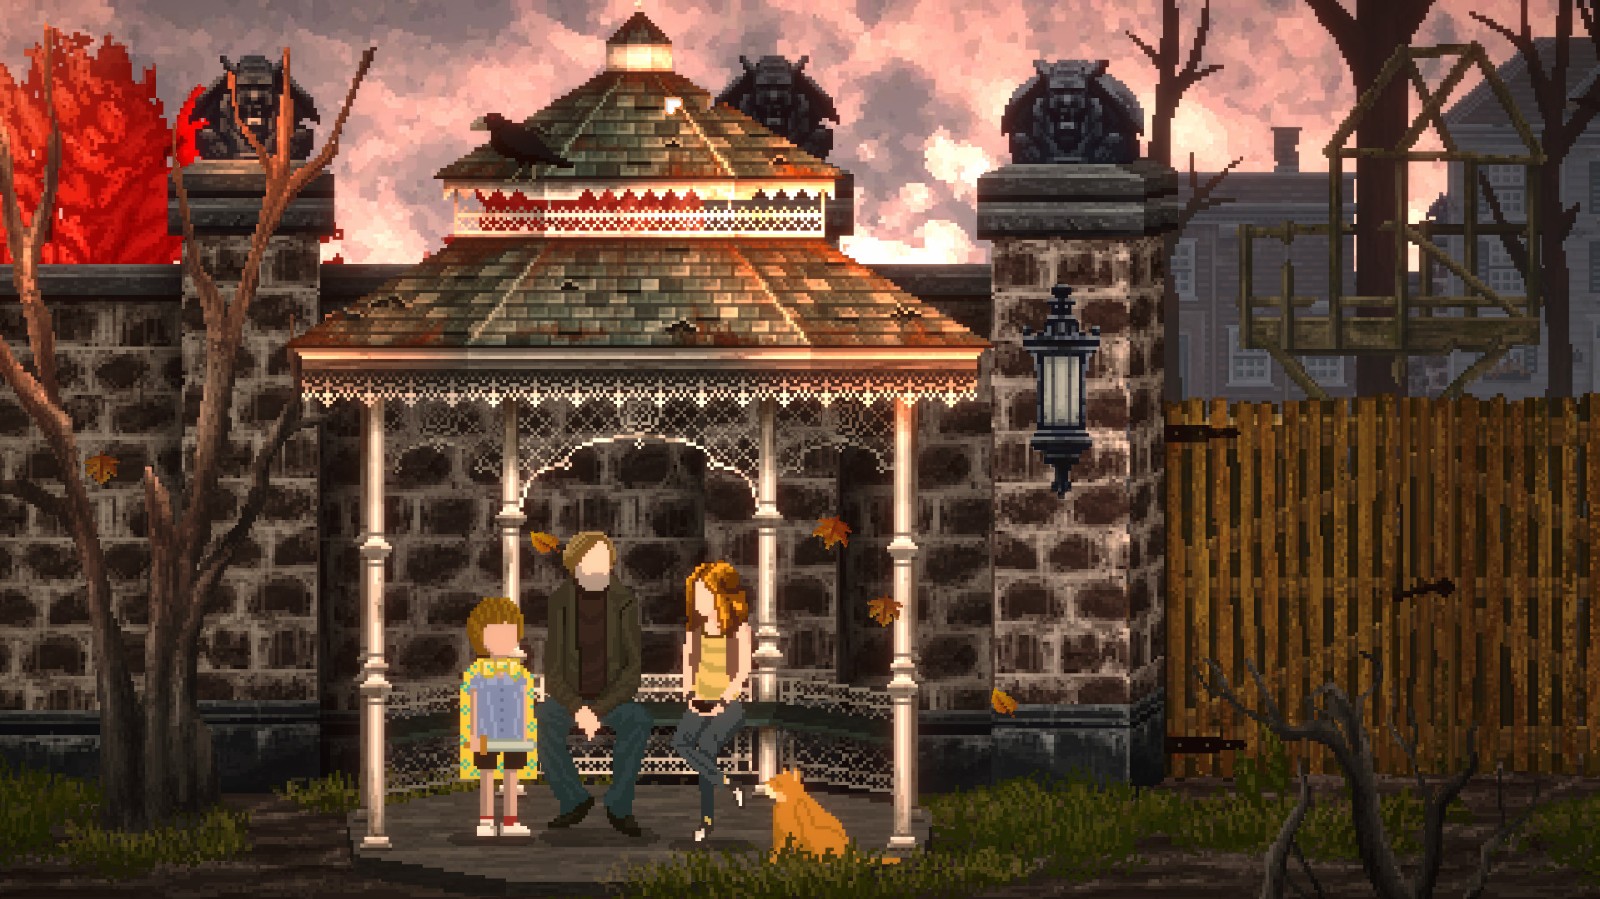 互动小说游戏《猫与众生》将于11月21日在Steam发售